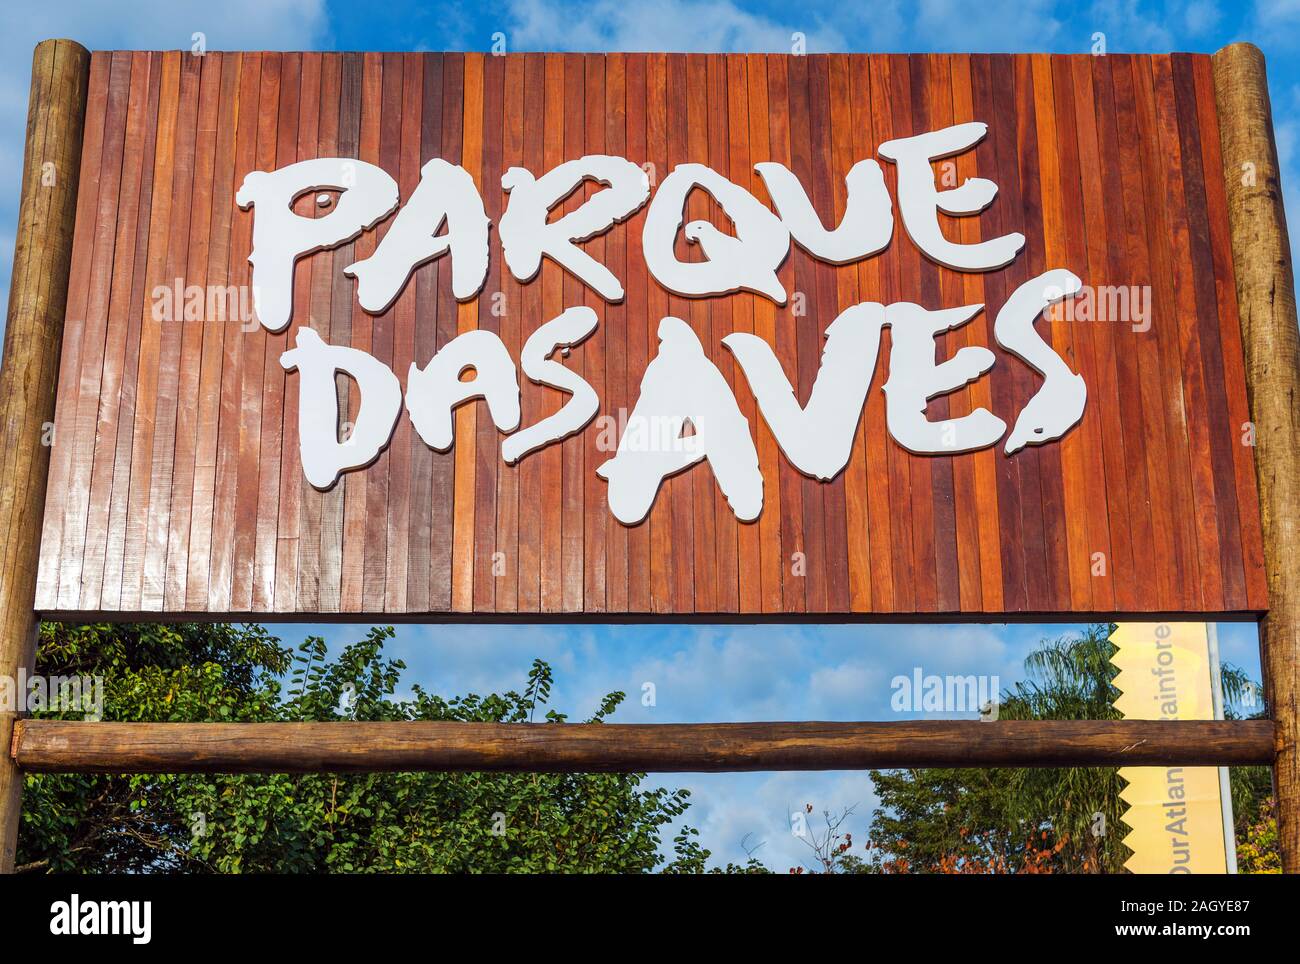 BIRD PARK Iguazu, Brésil - 22 juin 2019 : panneau en bois avec l'inscription 'Parque das Aves'. Close-up Banque D'Images